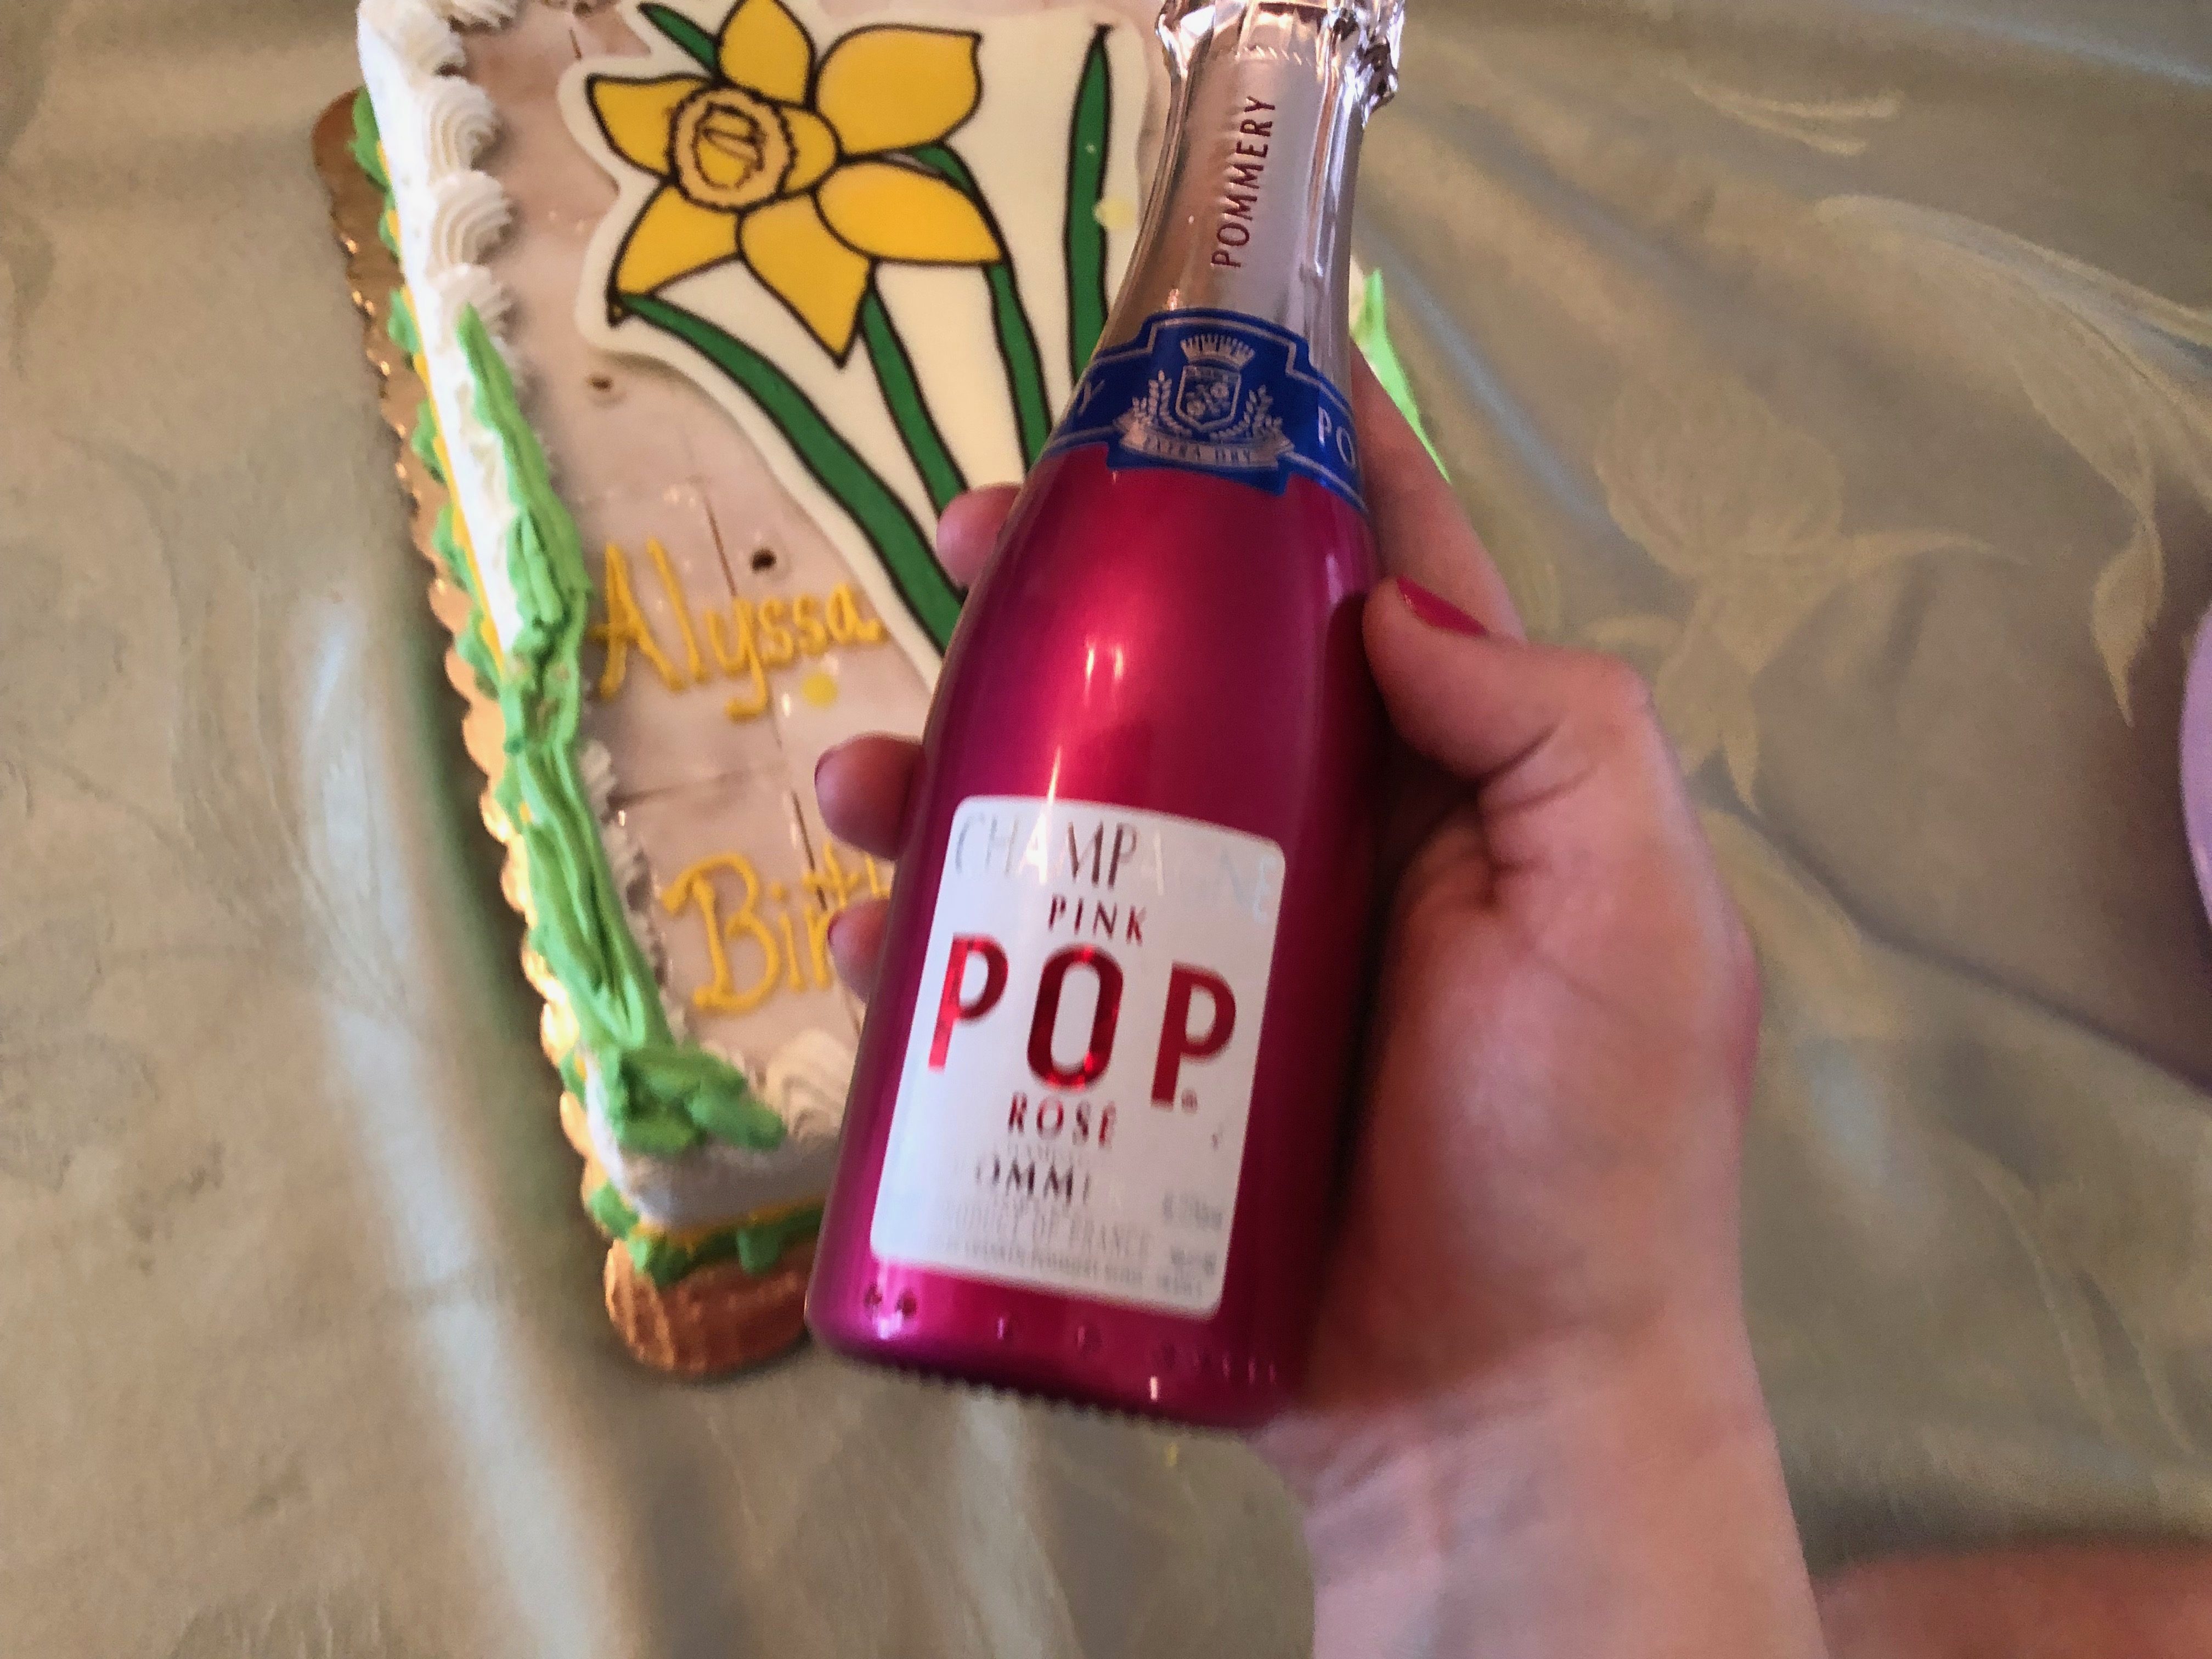 Pommery Pop Rose